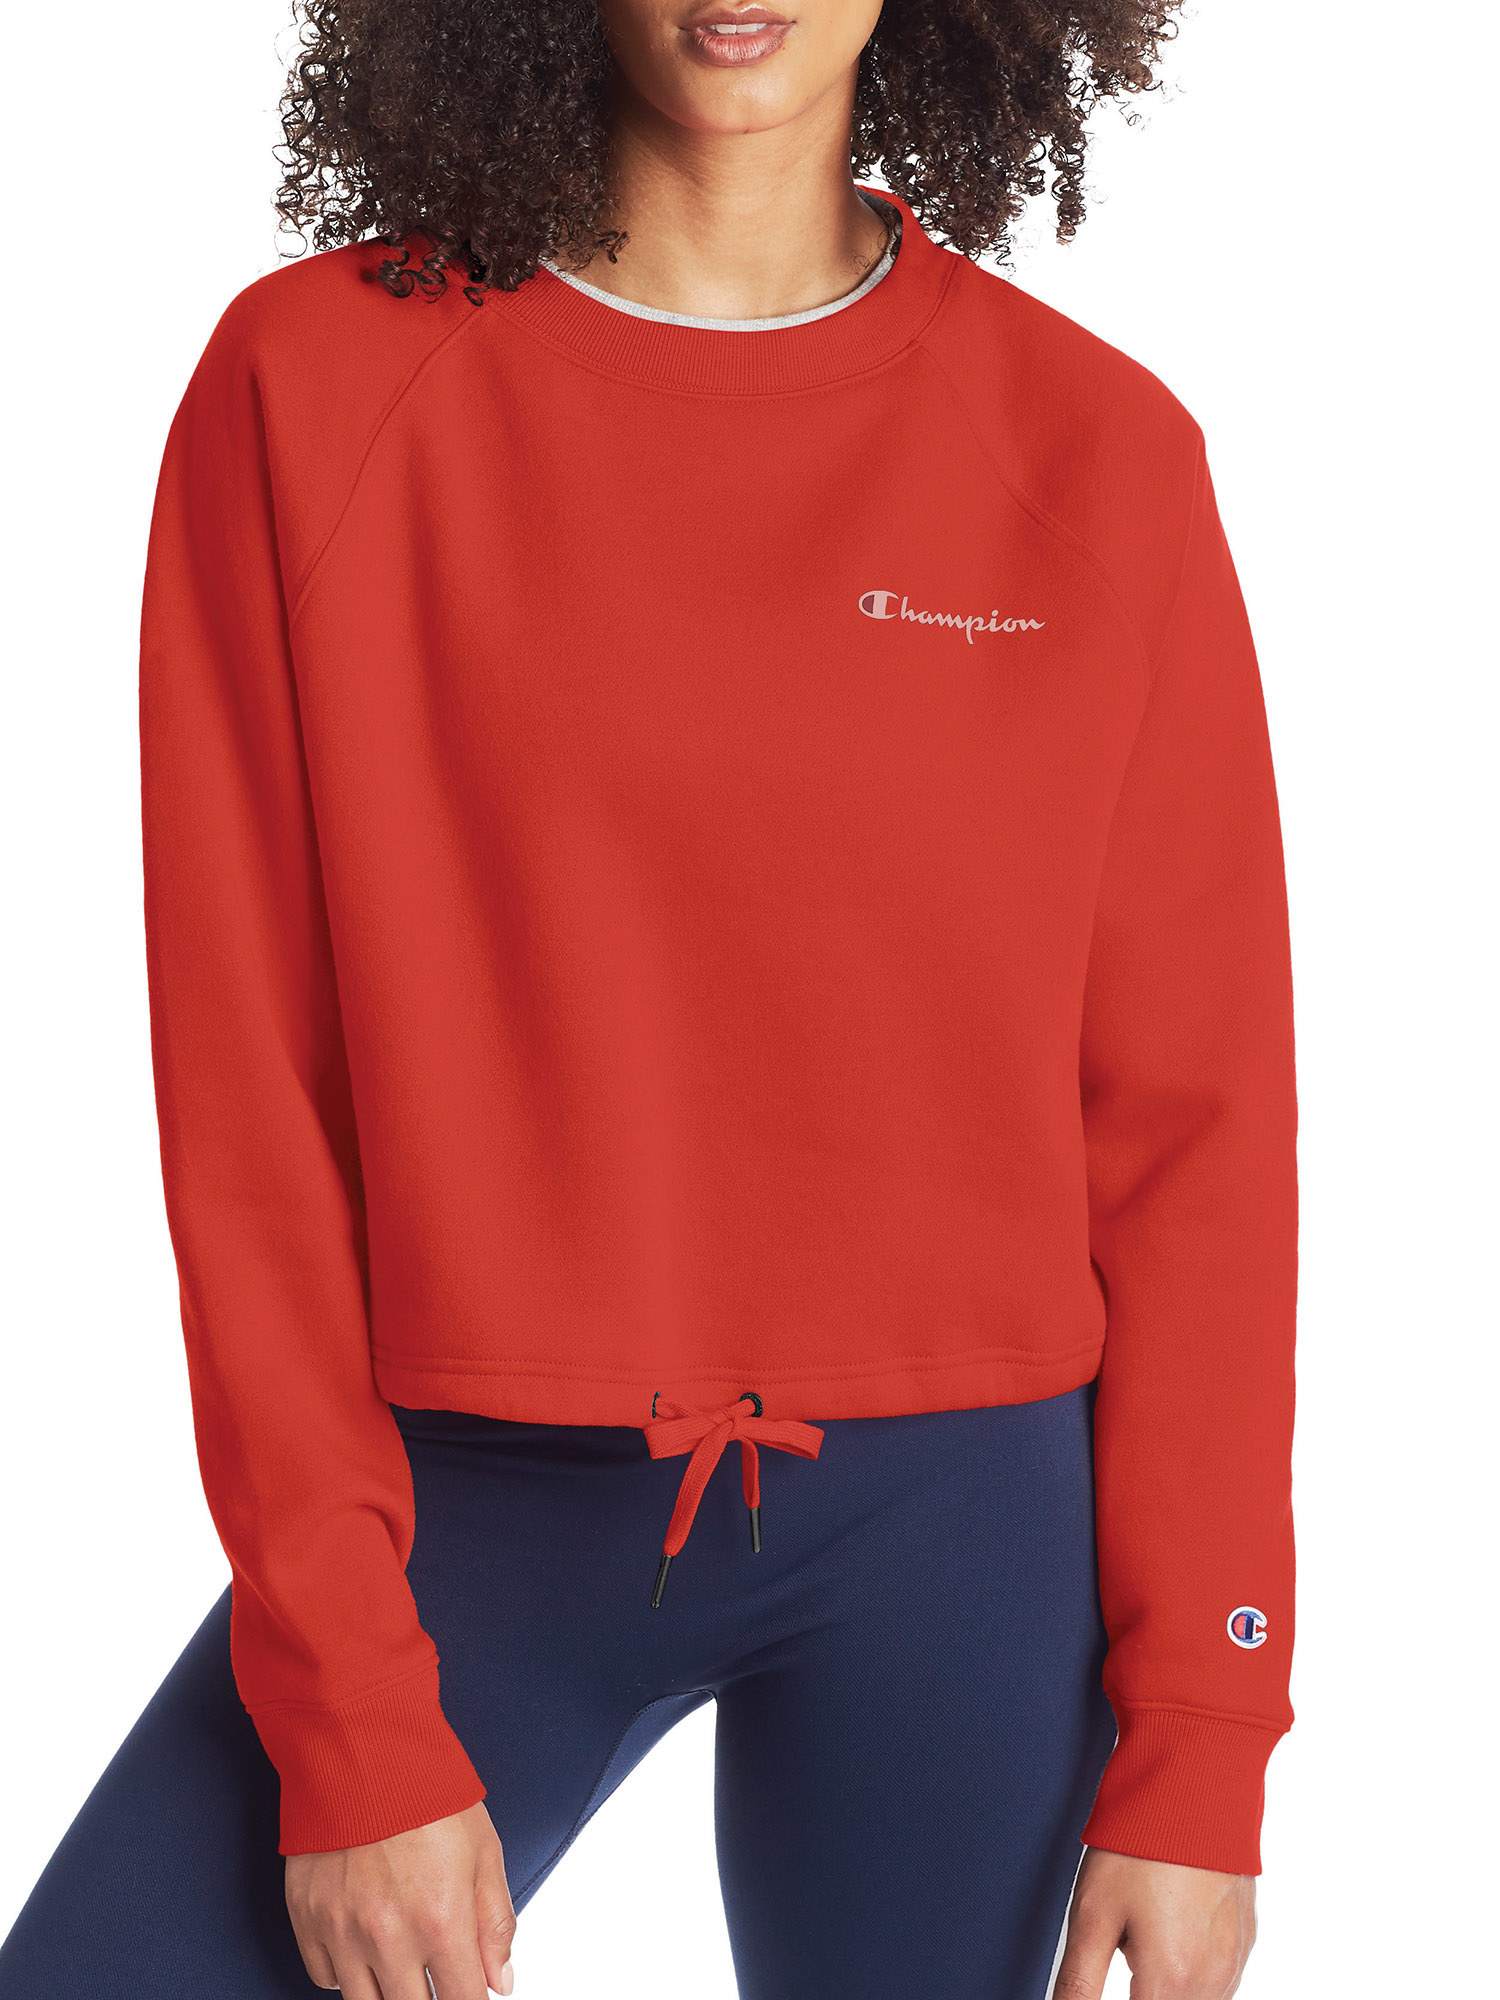 Model wearing the hearty red Champion fleece cropped sweatshirt